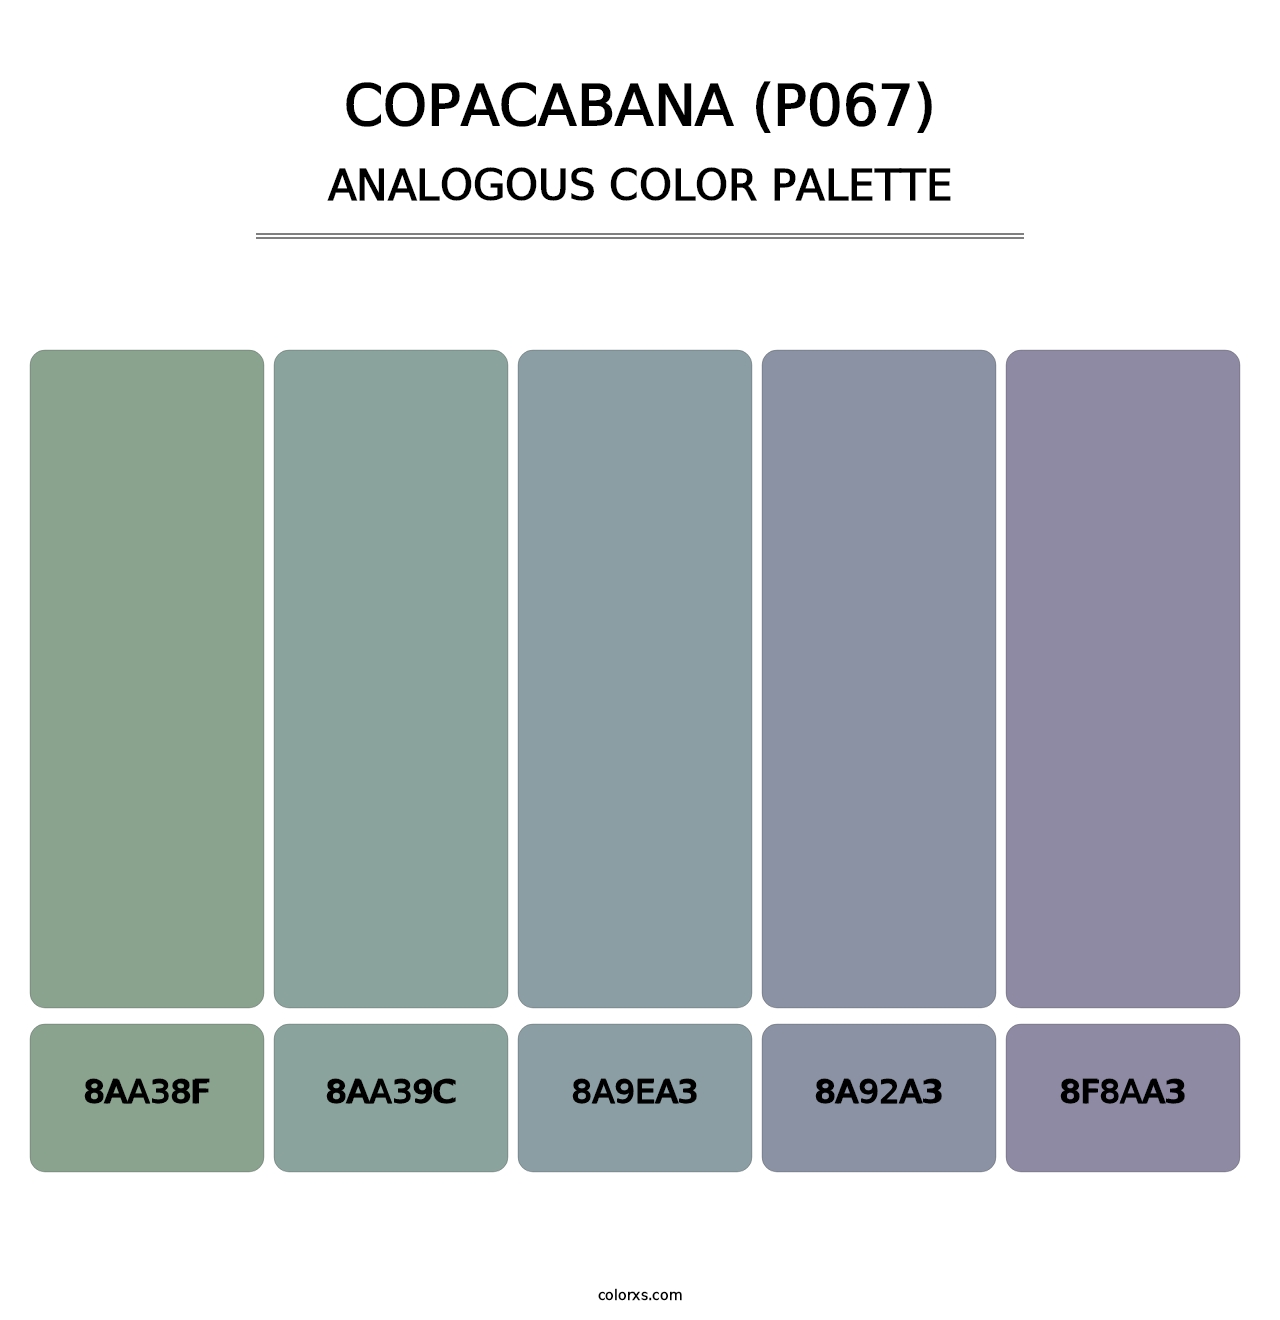 Copacabana (P067) - Analogous Color Palette